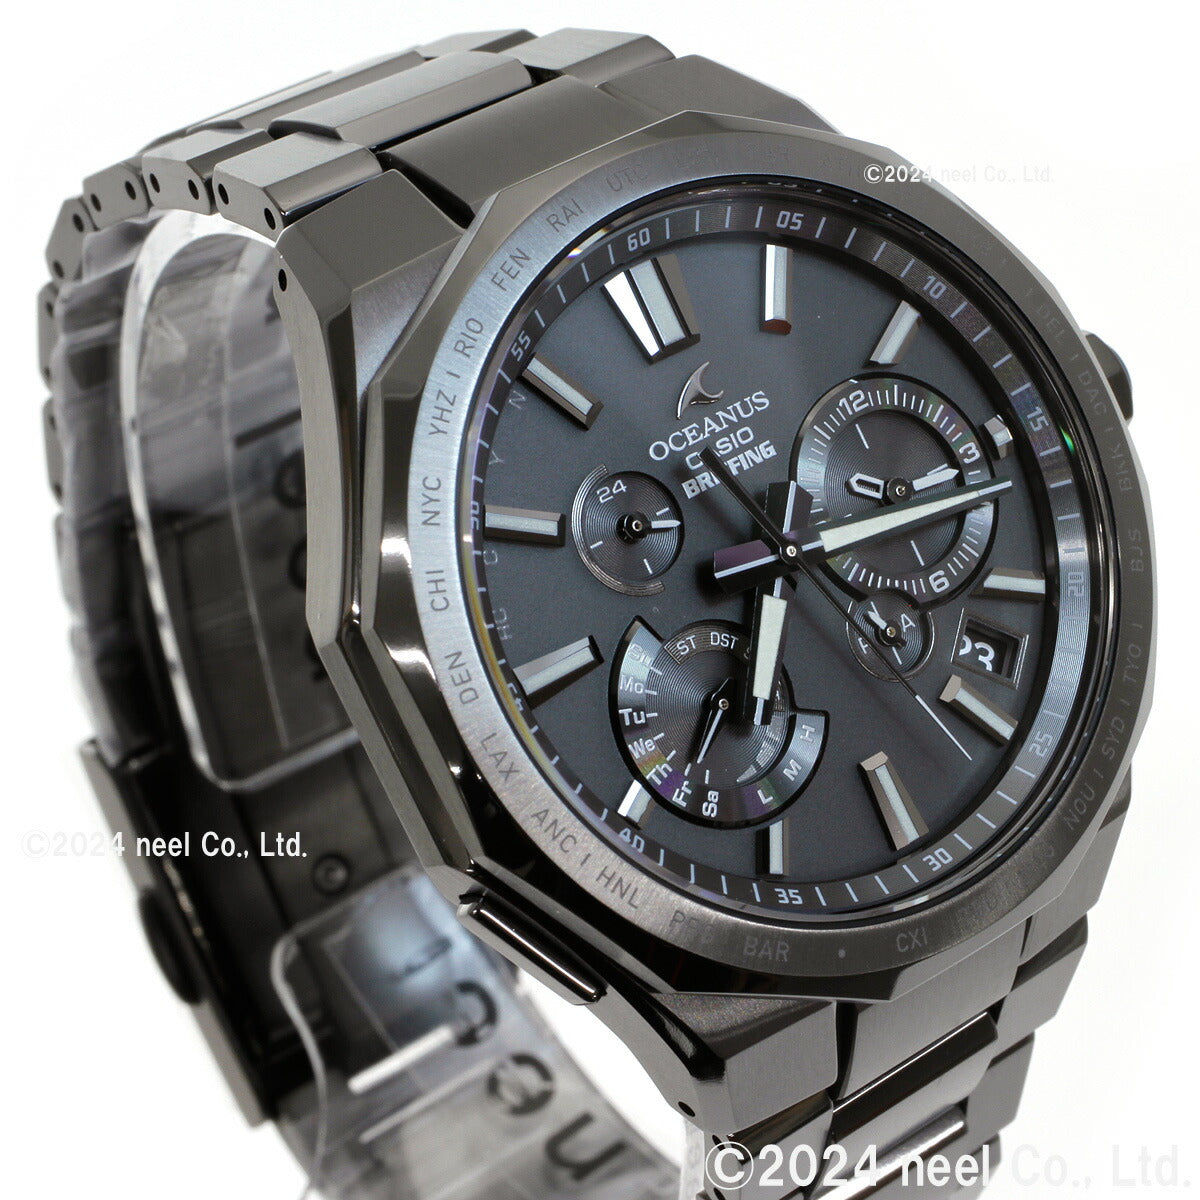 カシオ オシアナス 電波 ソーラー BRIEFING コラボ 限定モデル 腕時計 メンズ タフソーラー CASIO OCEANUS OCW-T6000BR-1AJR Premium Production Line